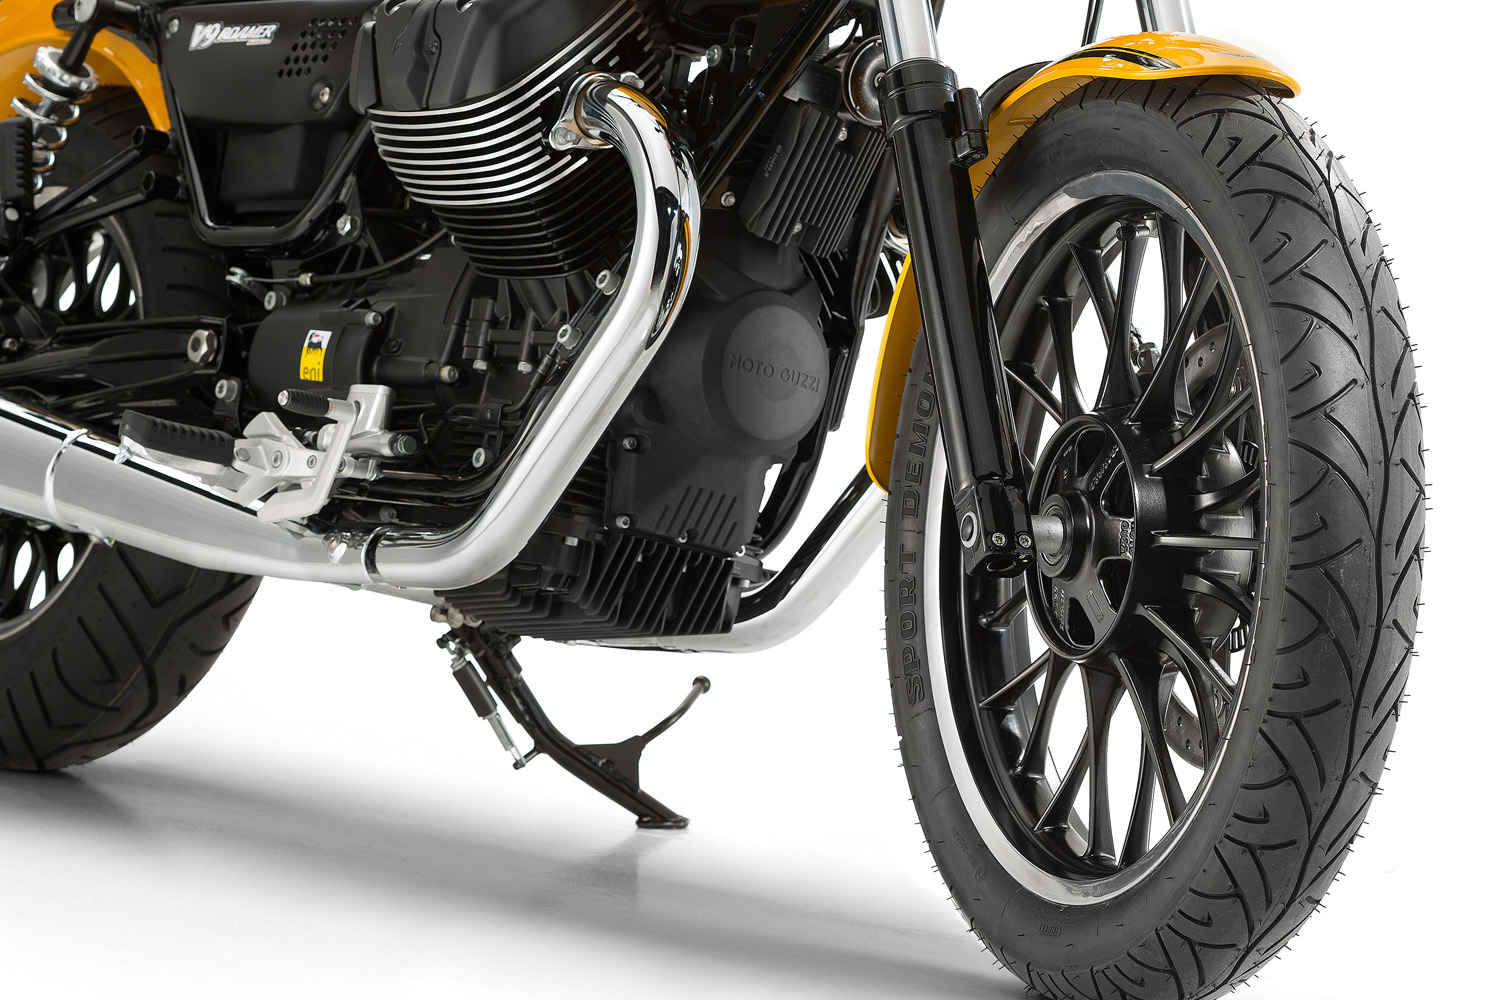 Moto Guzzi V9 Roamer front wheel view